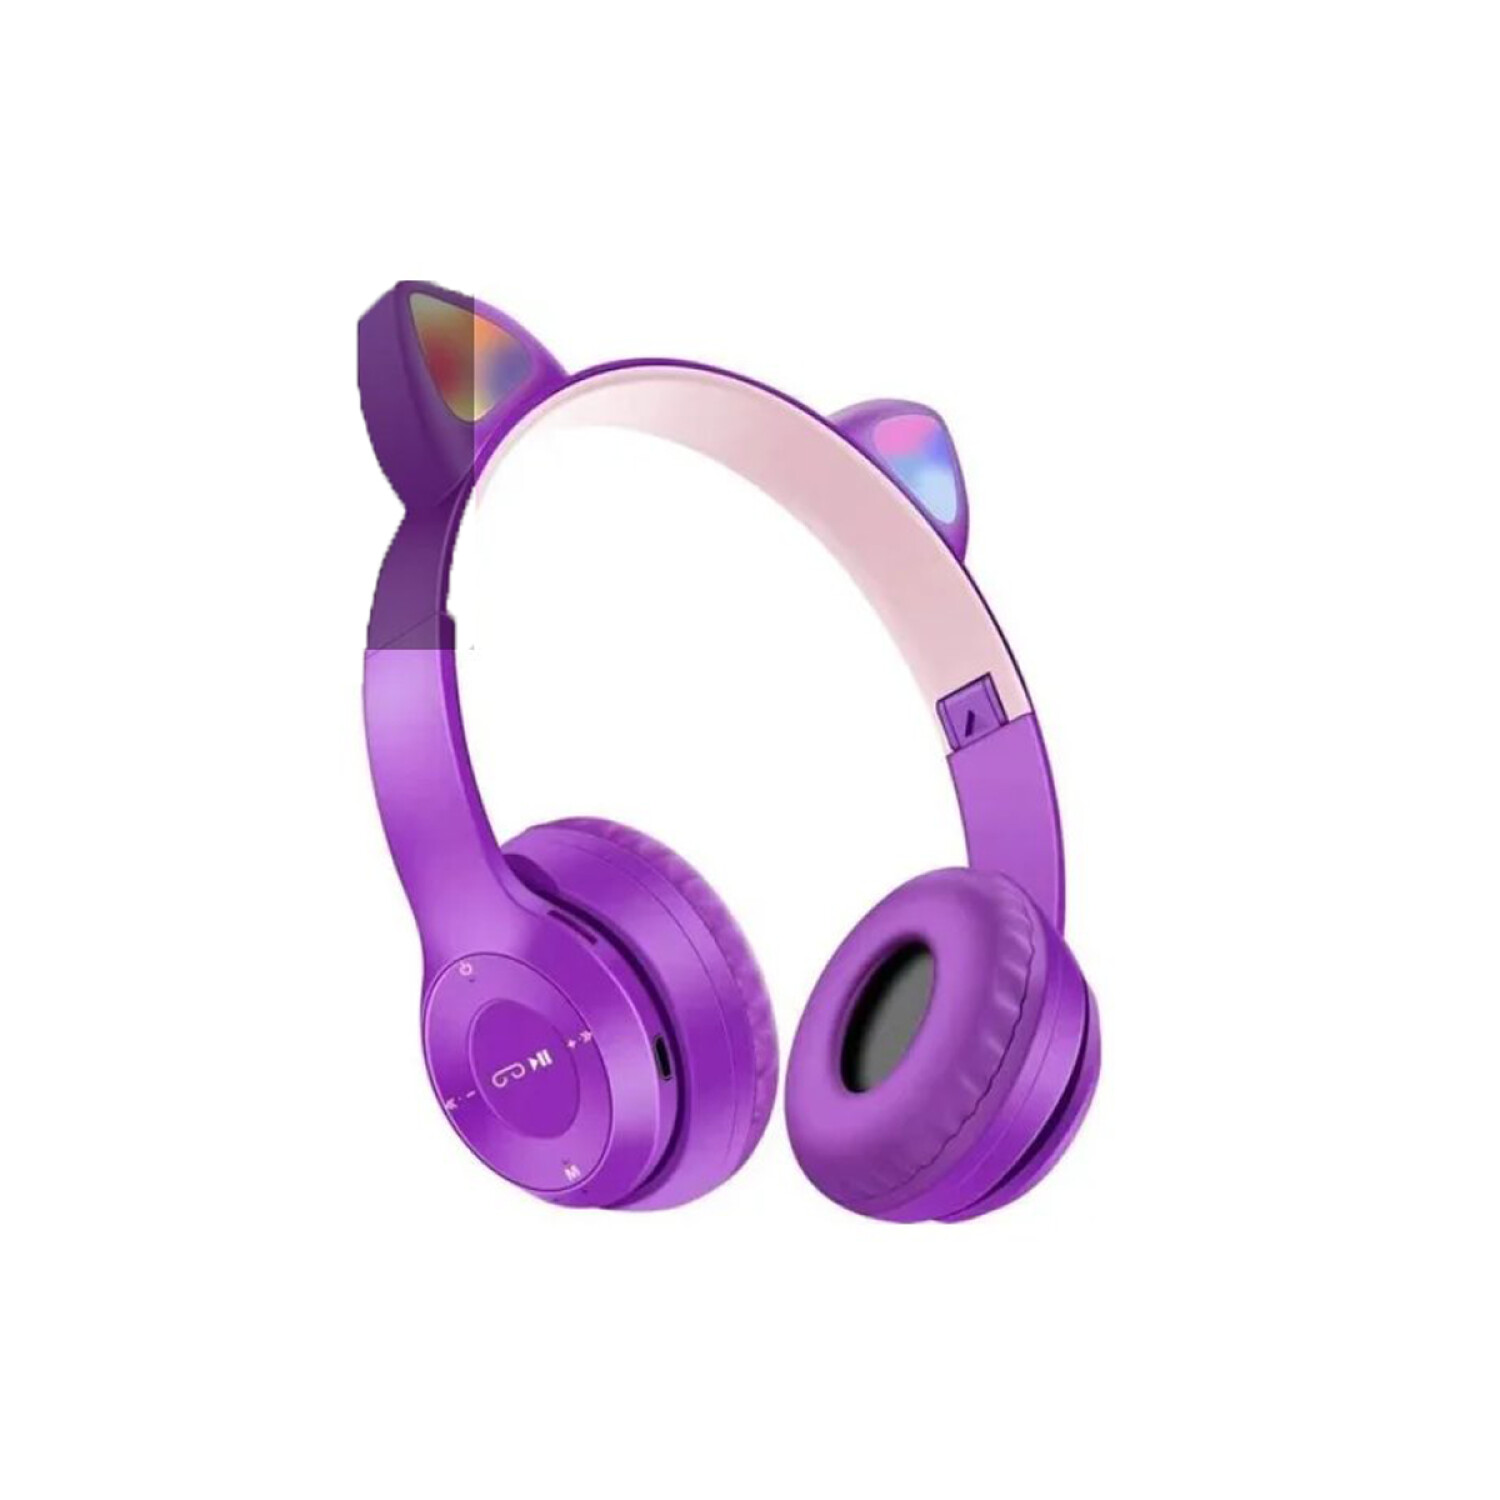 BT029C RGB Modos duales Oreja de gato Auriculares inalámbricos Bluetooth ( Rosa)